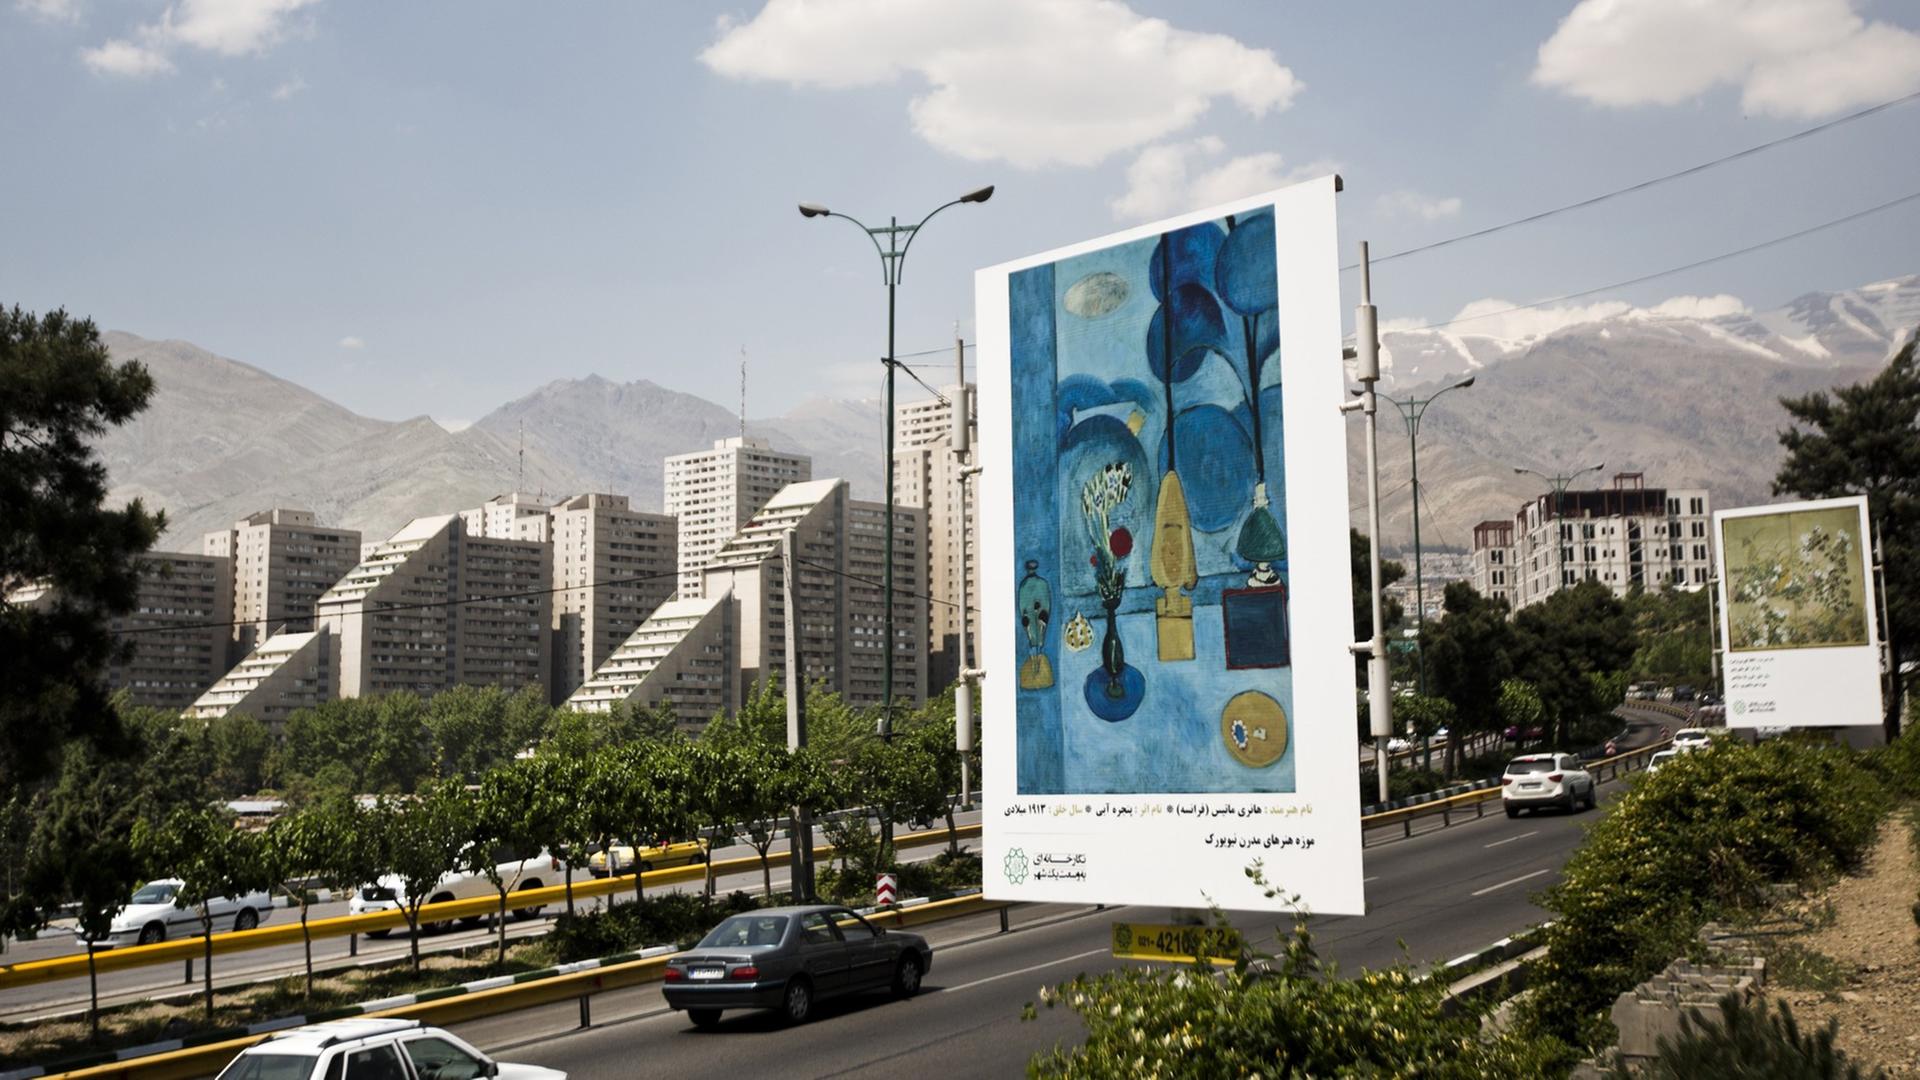 Blick auf eine große Straße in Teheran, am Rand der Straße sind Bilder von Künstlern wie Picasso oder Matisse auf Werbeplakaten zu sehen.